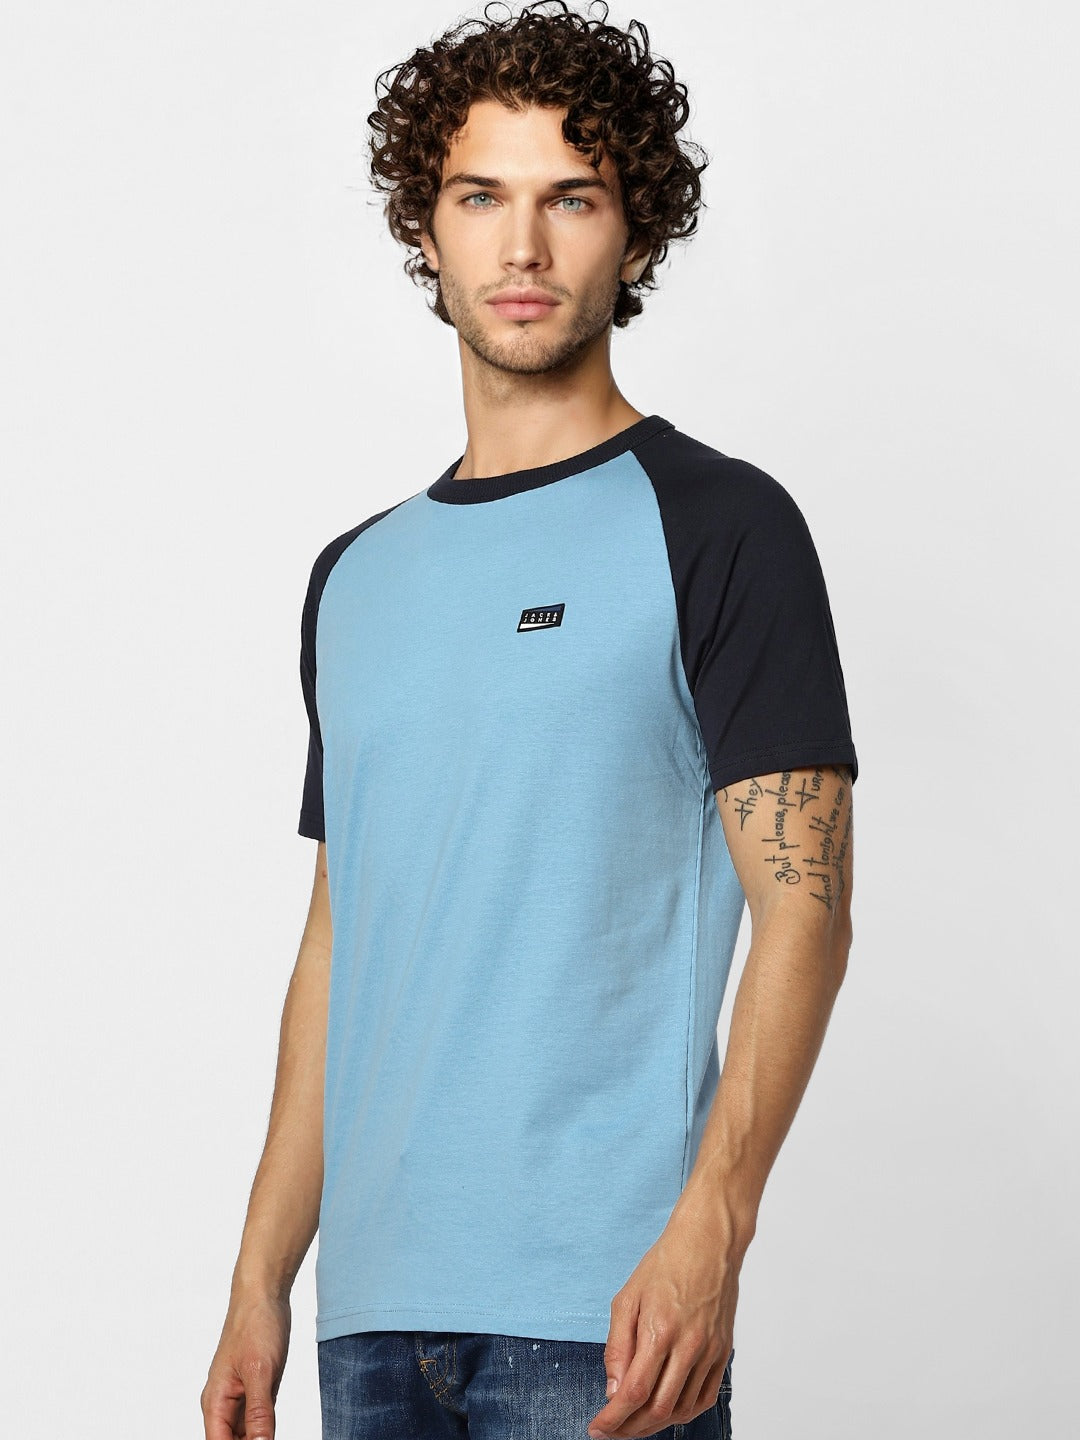 Jack Jones Men Blue Solid Slim Fit Round Neck Sustainable Pure Cotton T-shirt-2114988002